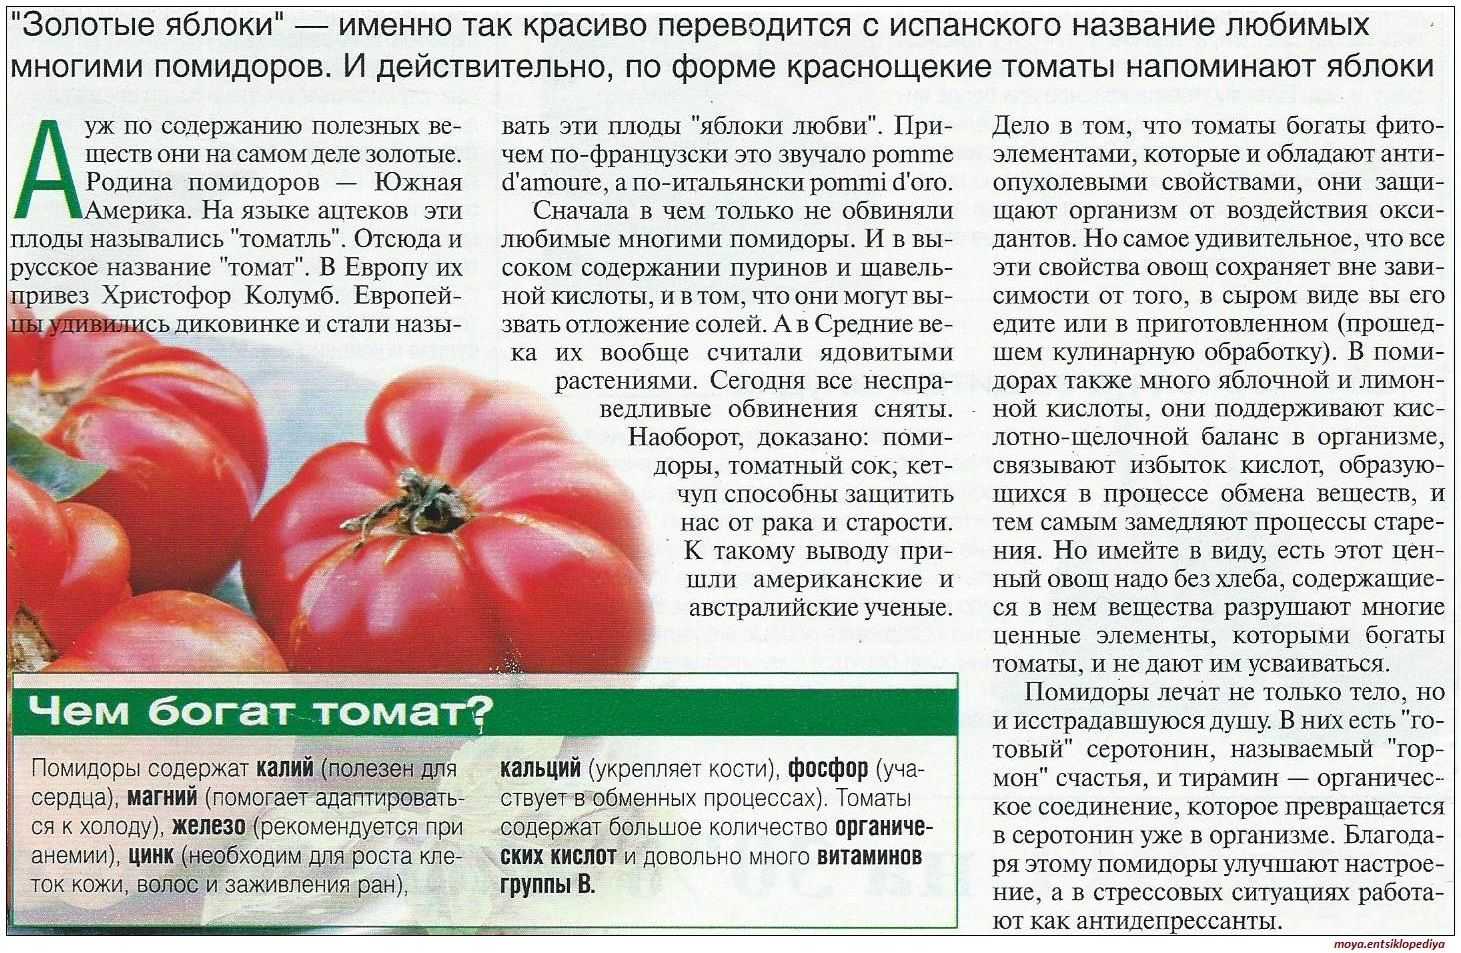 Можно ли помидор при грудном. Описание помидора. Полезные вещества в помидорах. Полезные качества помидора. Полезные свойства помидора.